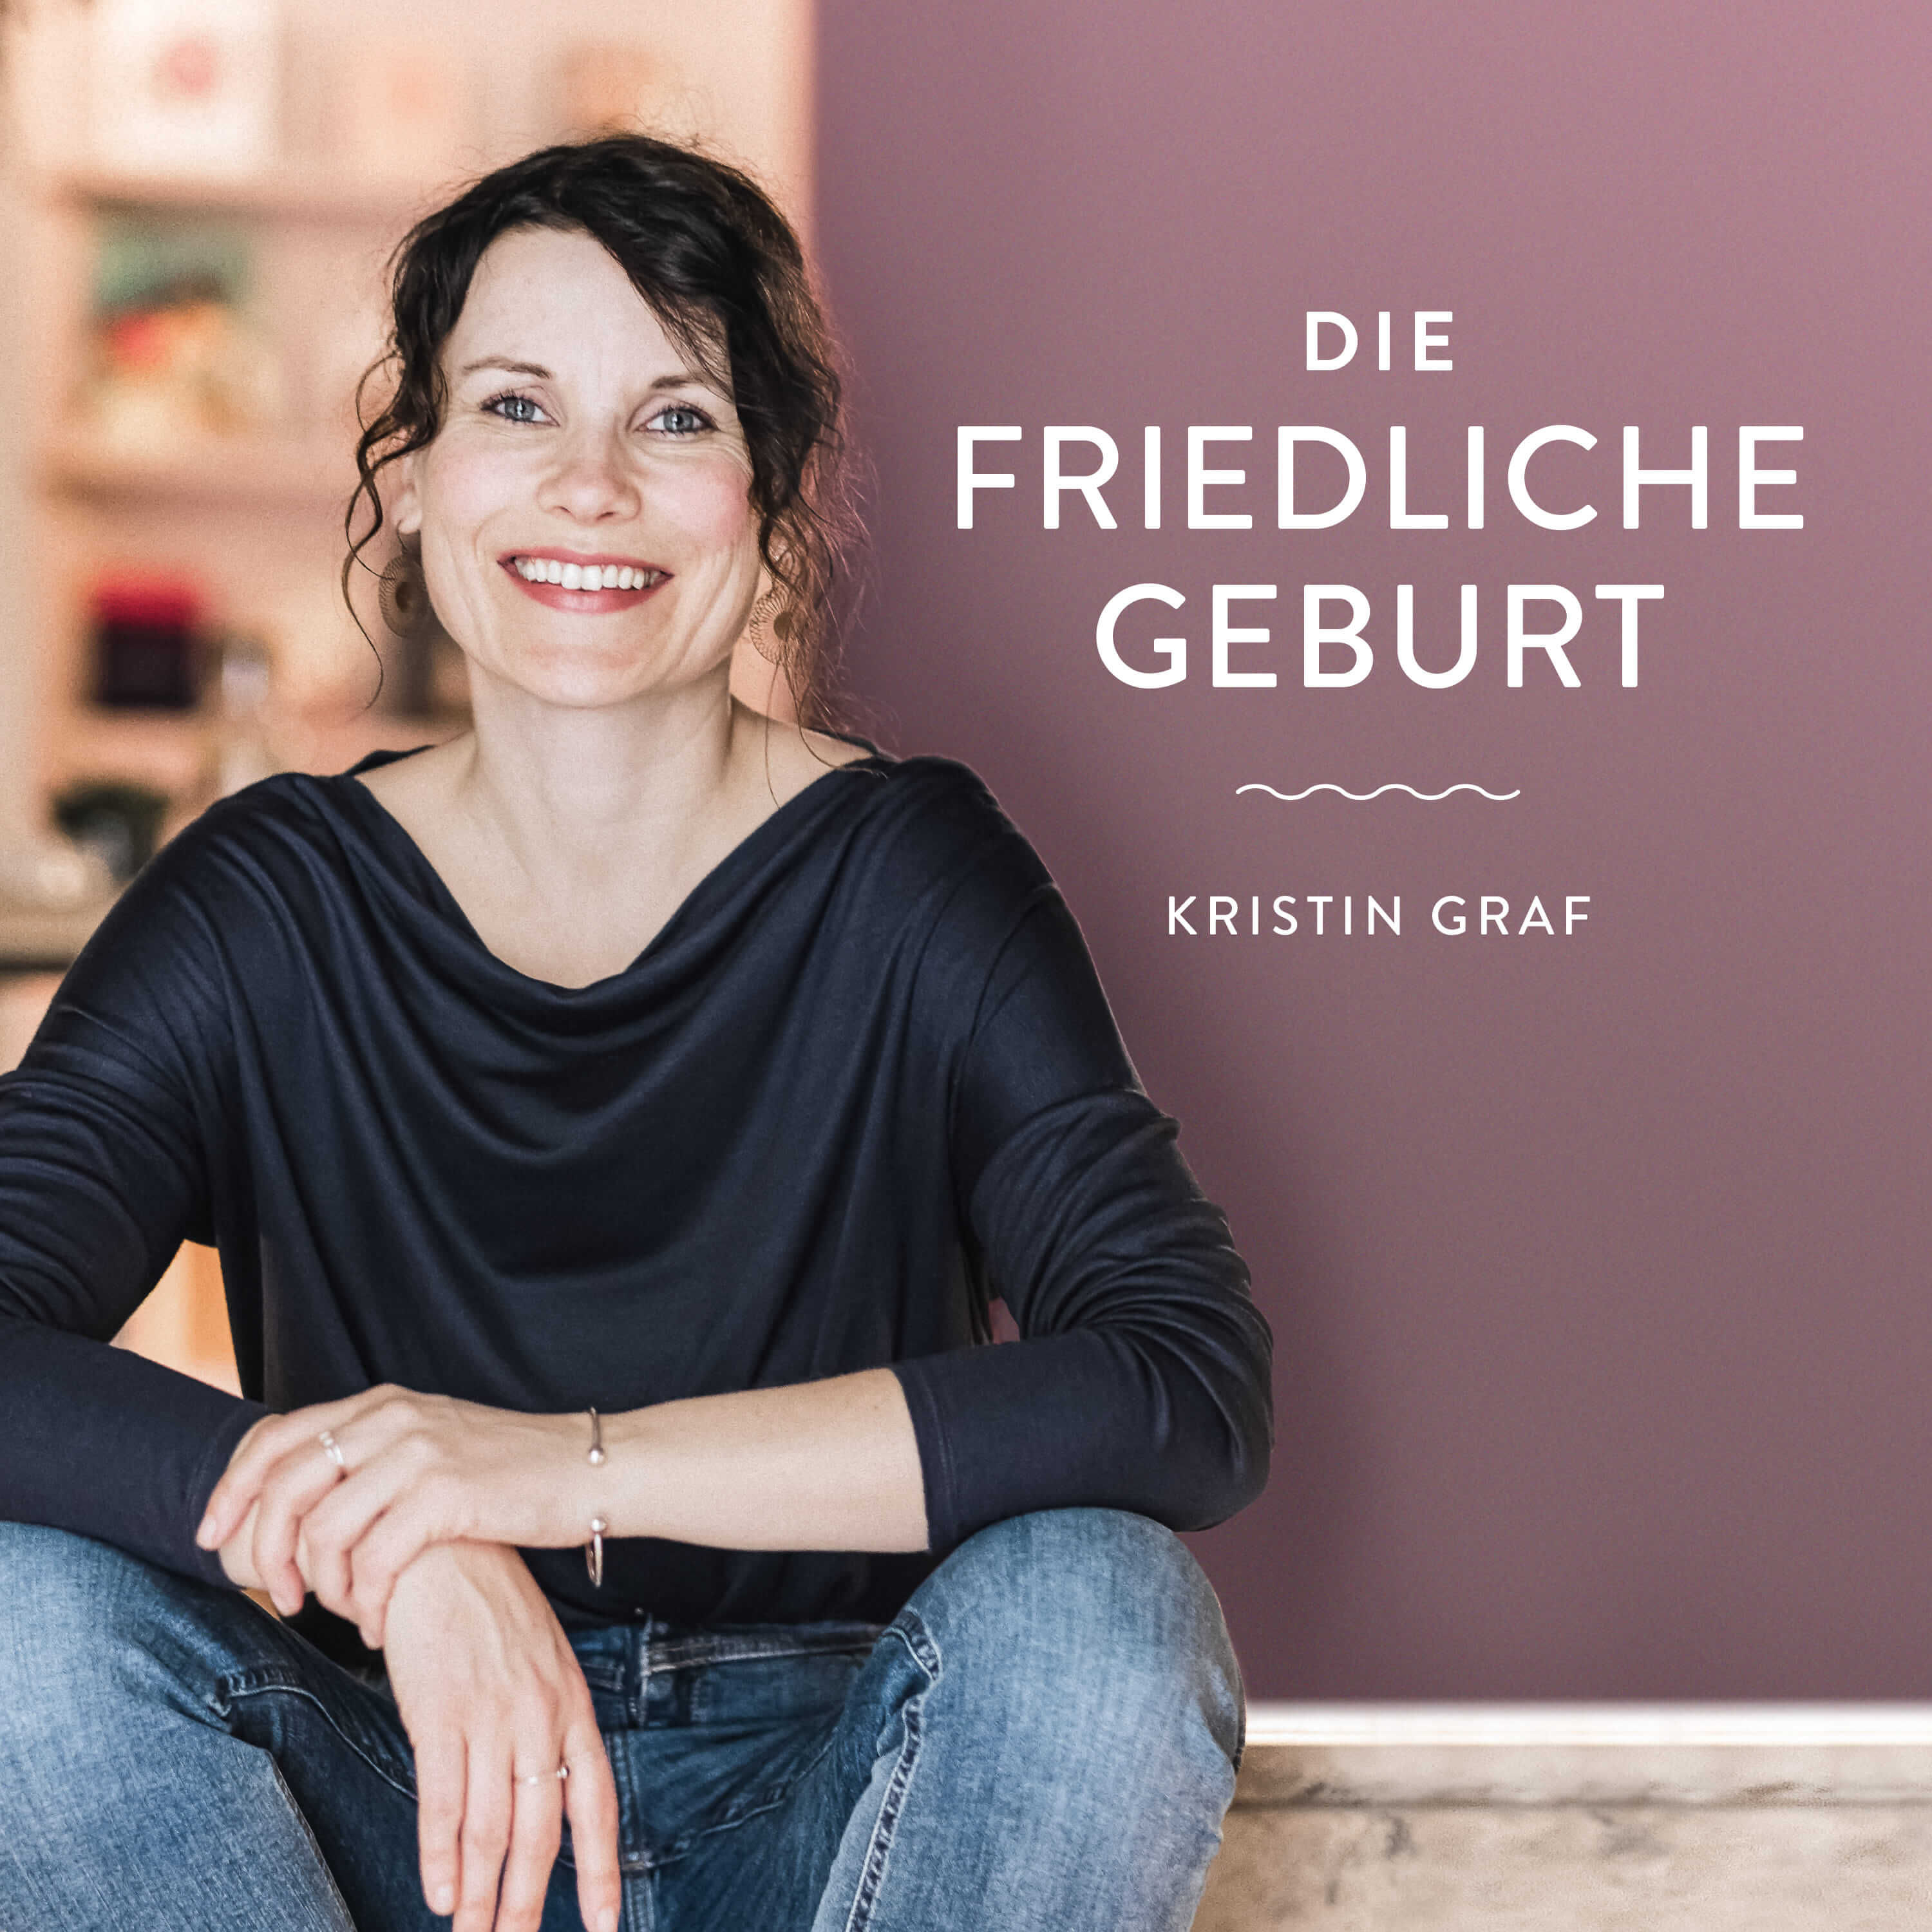 Die Friedliche Geburt - Positive Geburtsvorbereitung mit Kristin Graf -  Podcast